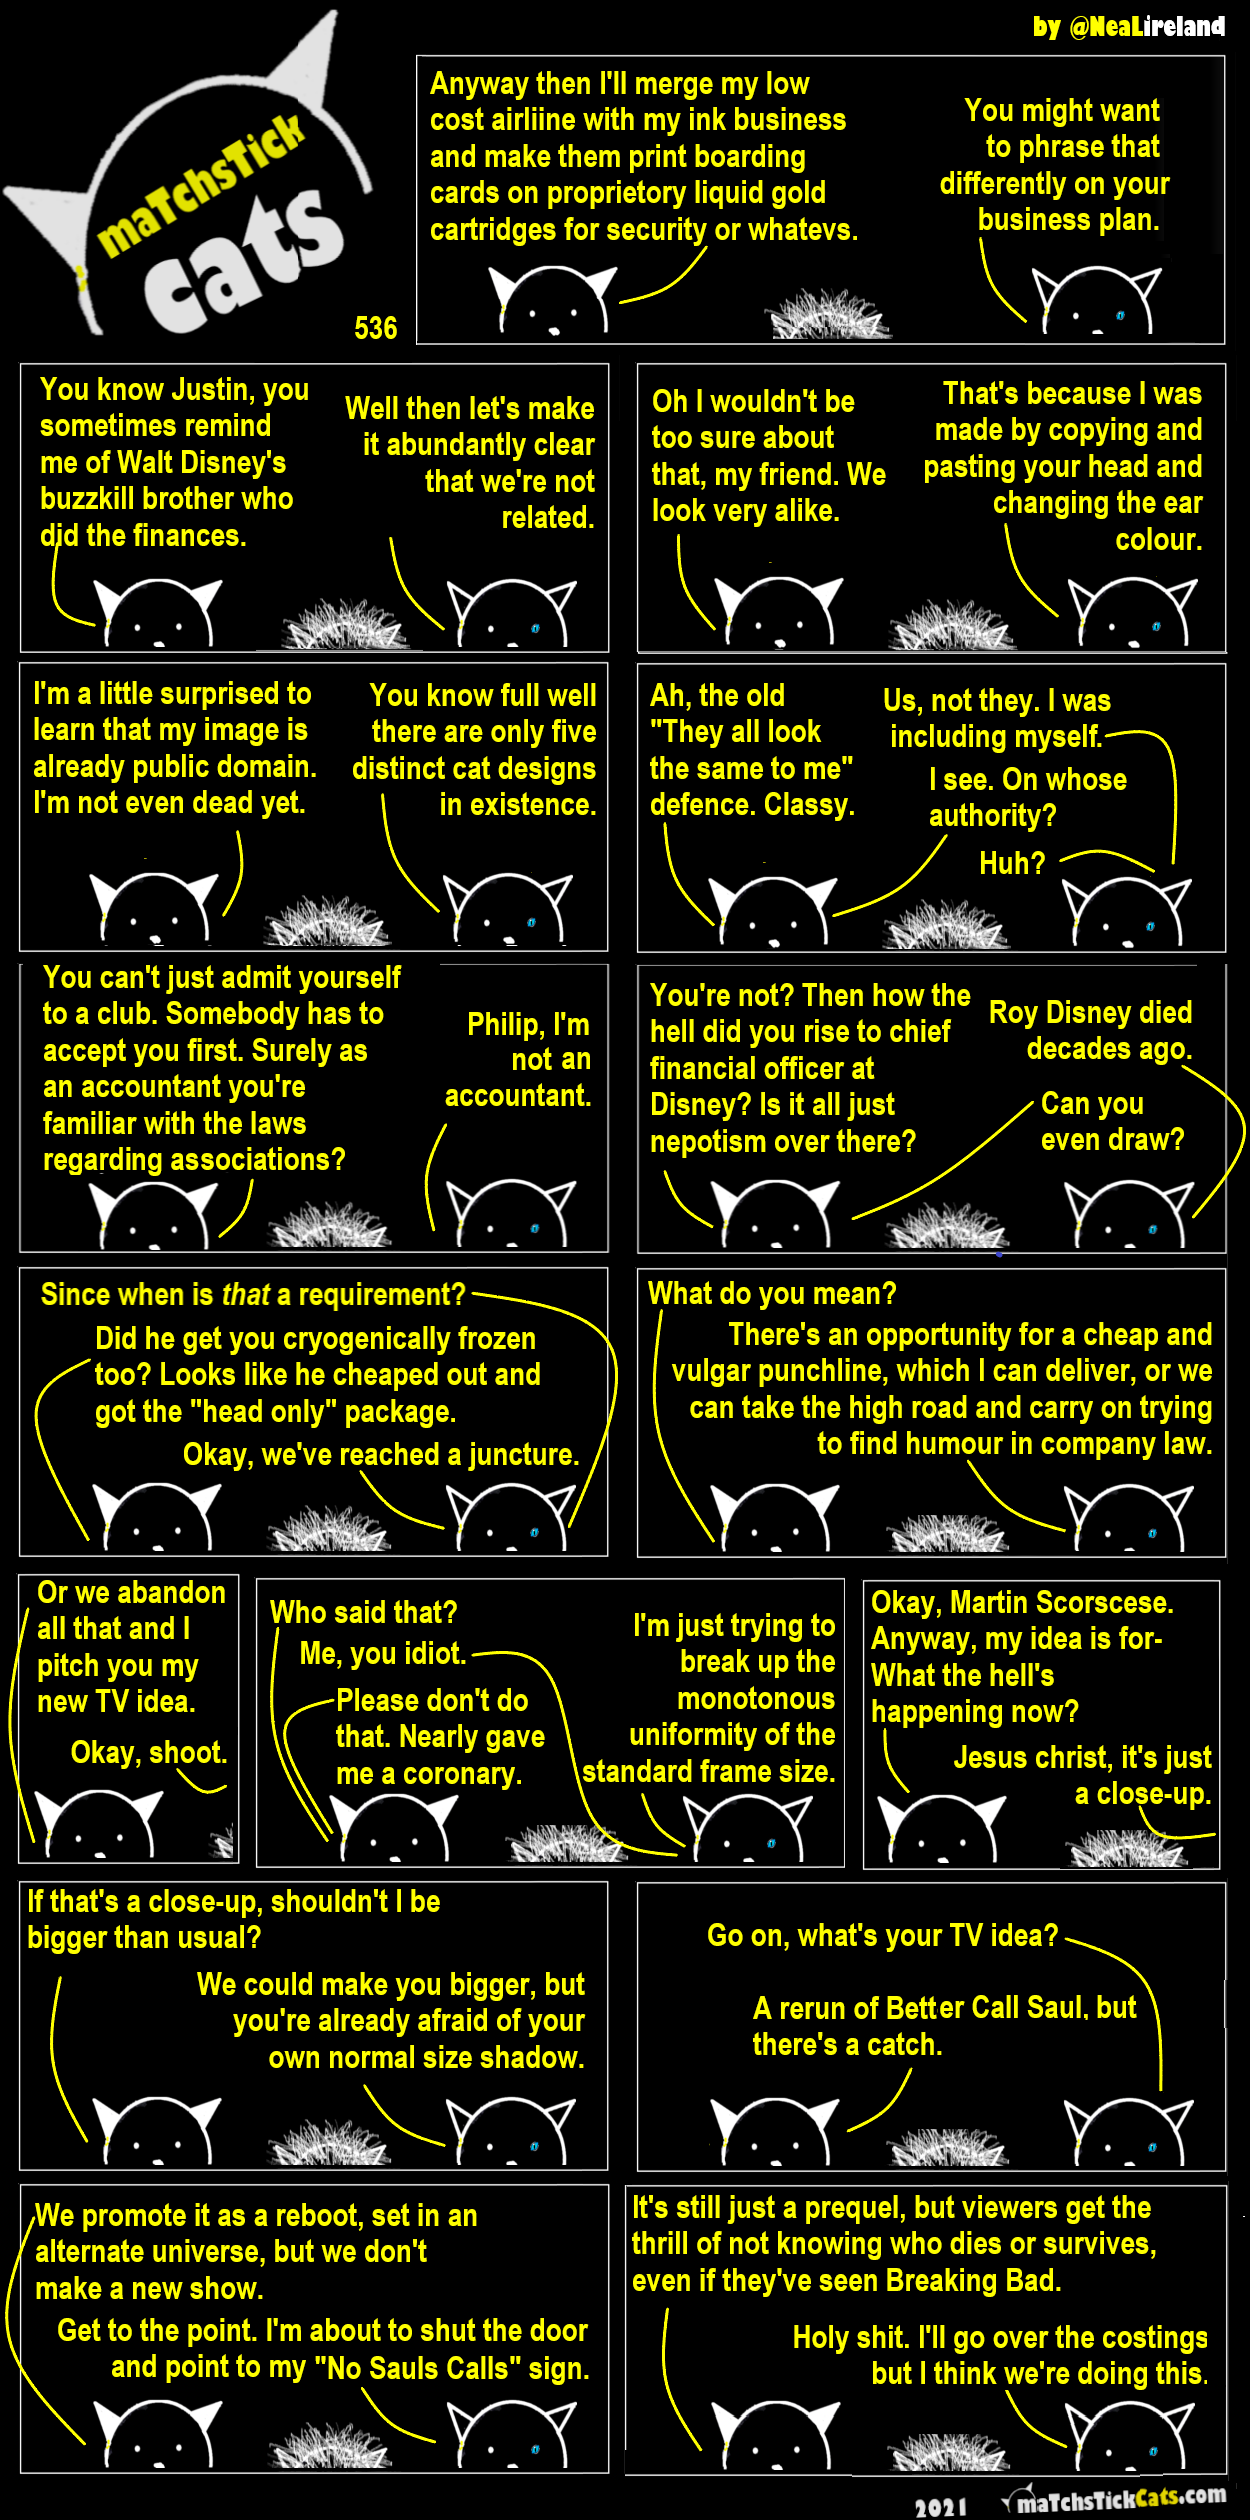 "Better Sell Caul" - Matchstick Cats episode 535 by @NealIreland - MatchstickCats.com